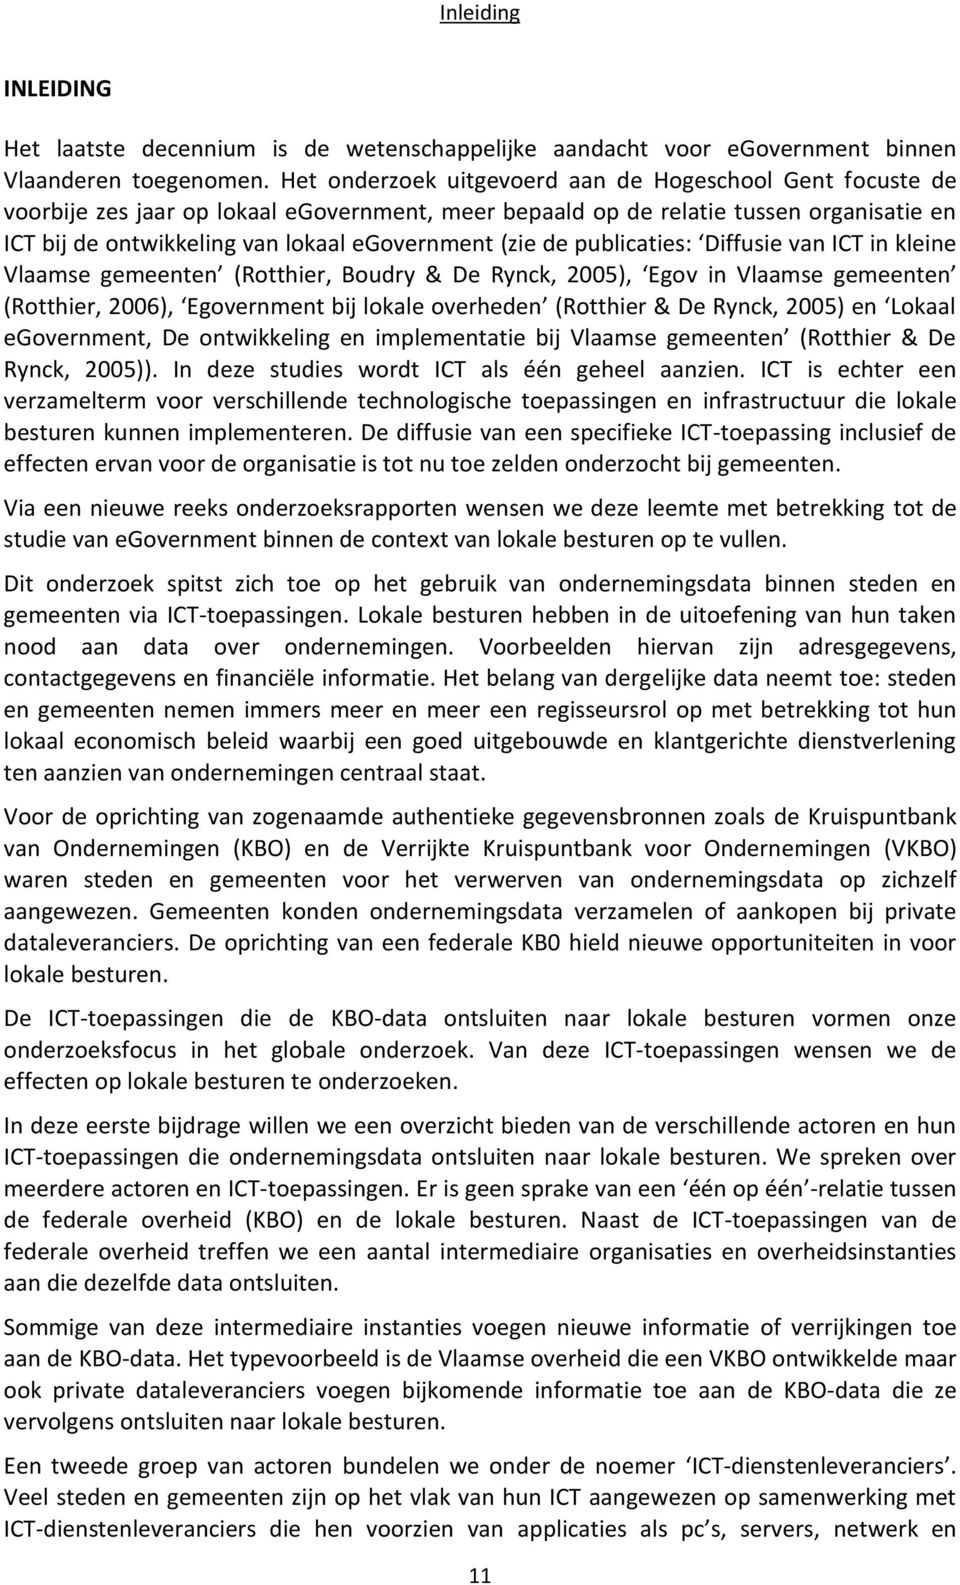 (zie de publicaties: Diffusie van ICT in kleine Vlaamse gemeenten (Rotthier, Boudry & De Rynck, 2005), Egov in Vlaamse gemeenten (Rotthier, 2006), Egovernment bij lokale overheden (Rotthier & De